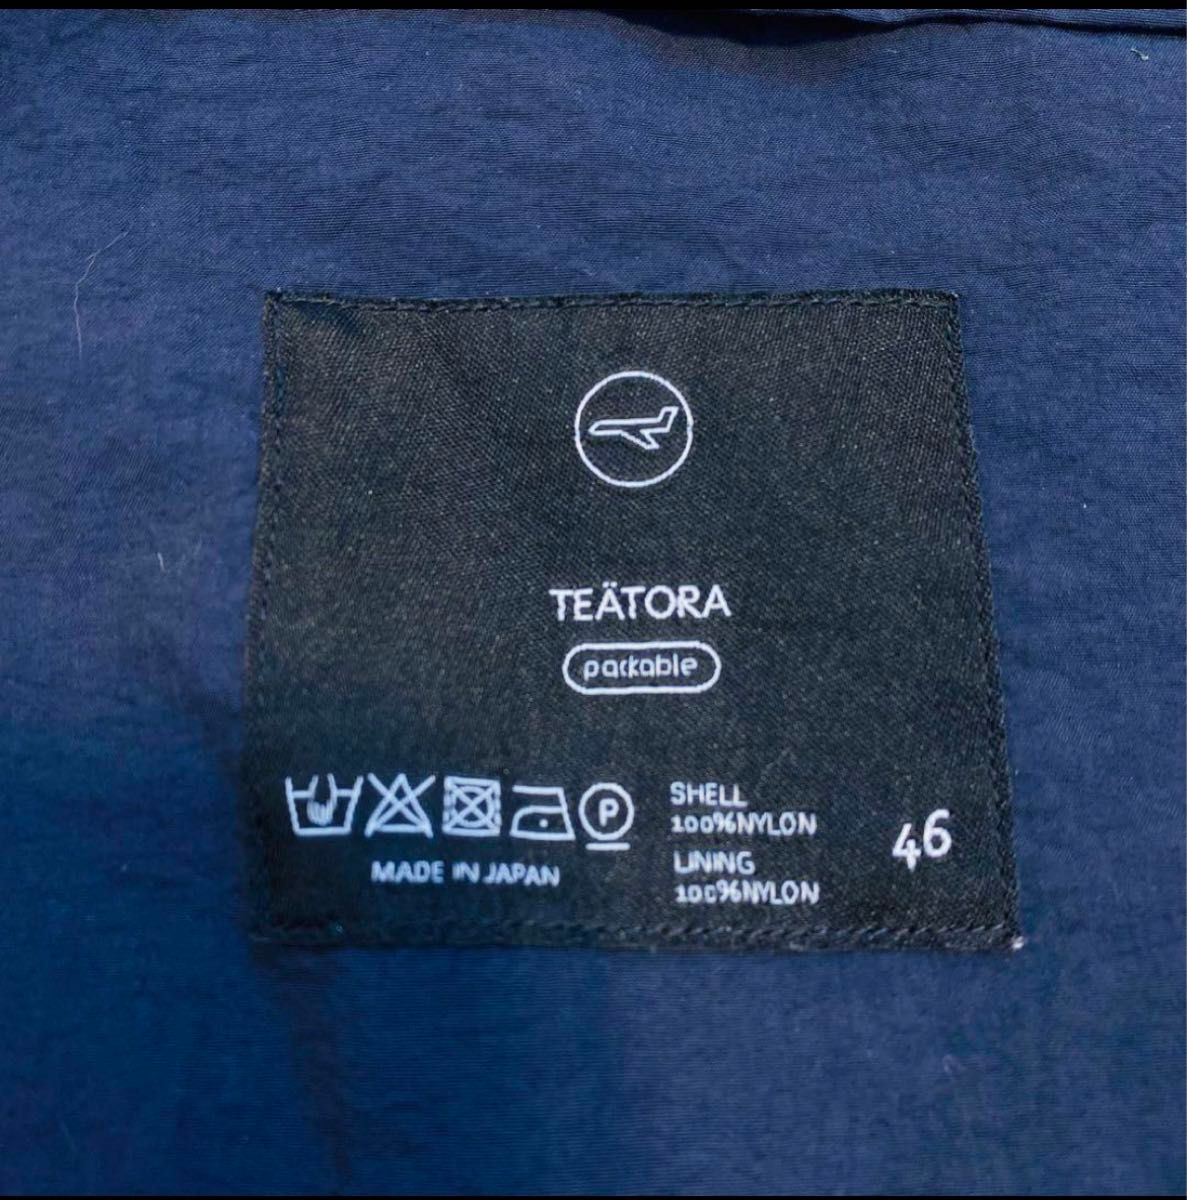 テアトラ デバイス テーラードジャケット パッカブル 46 ネイビー